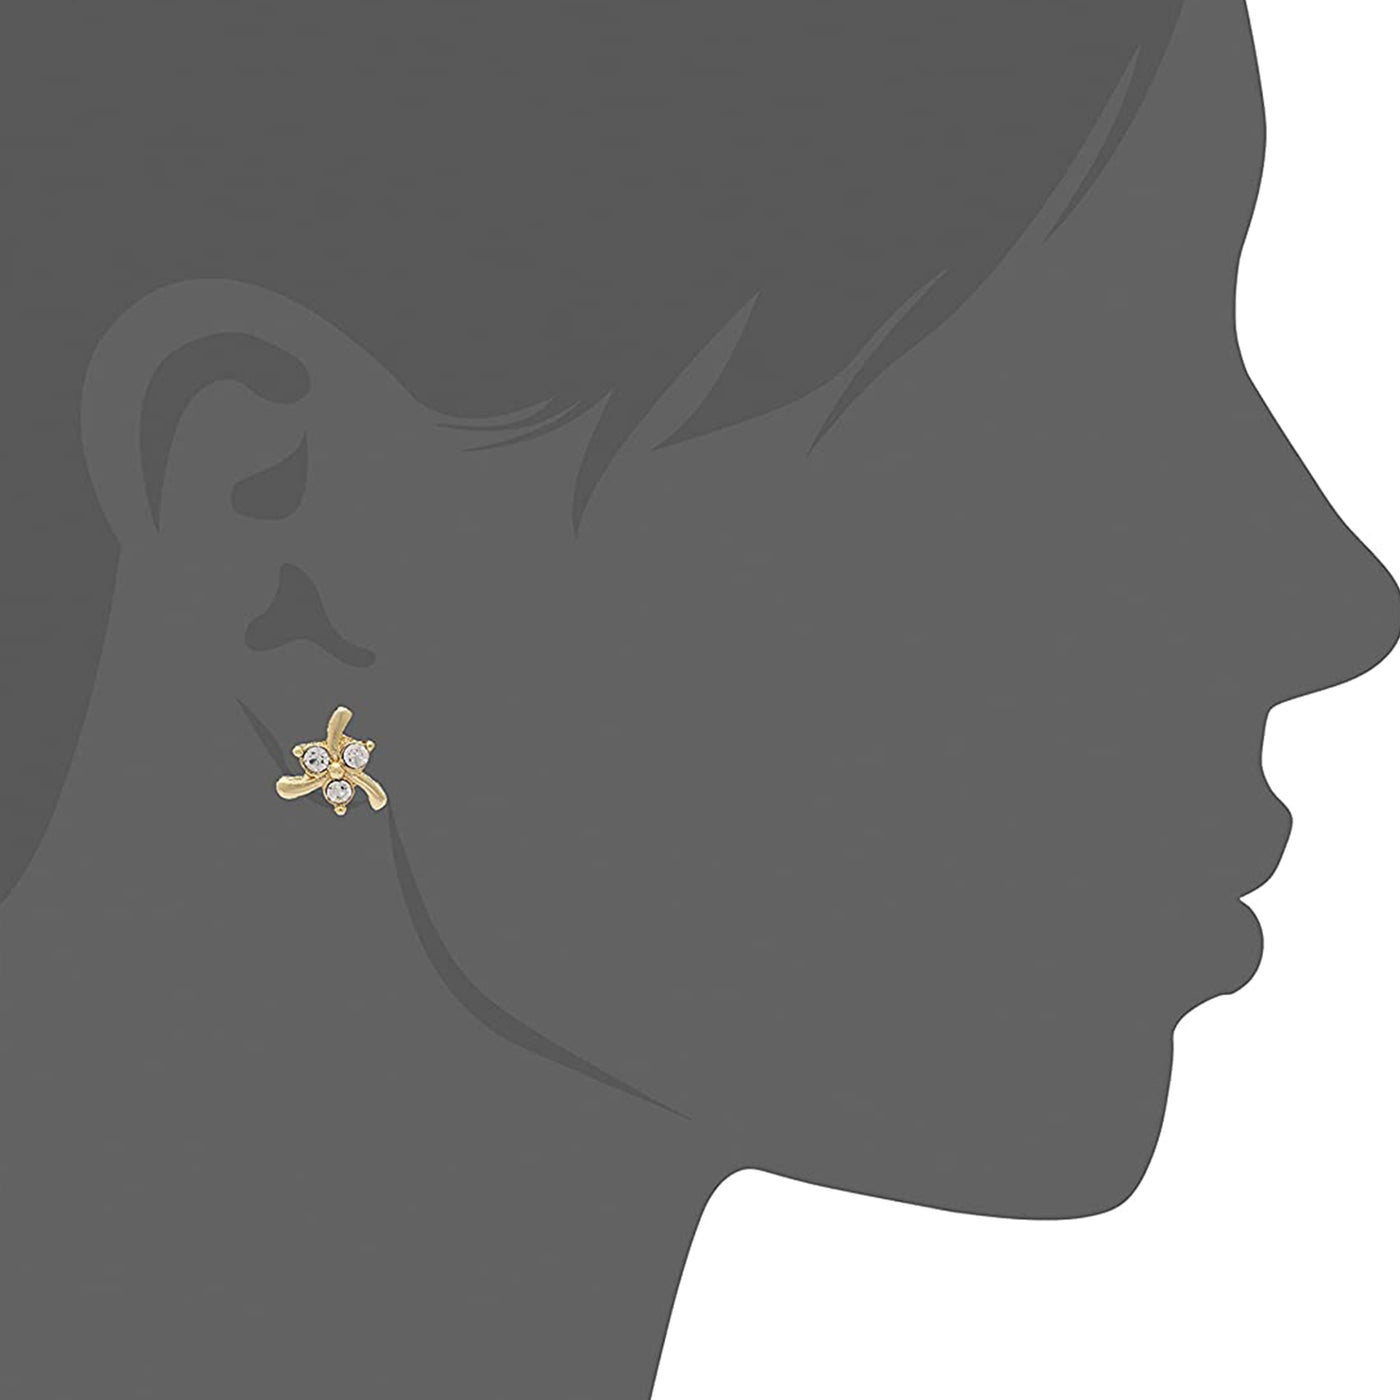 Estele Gold Plated Flower Designer Stud Earrings for Women